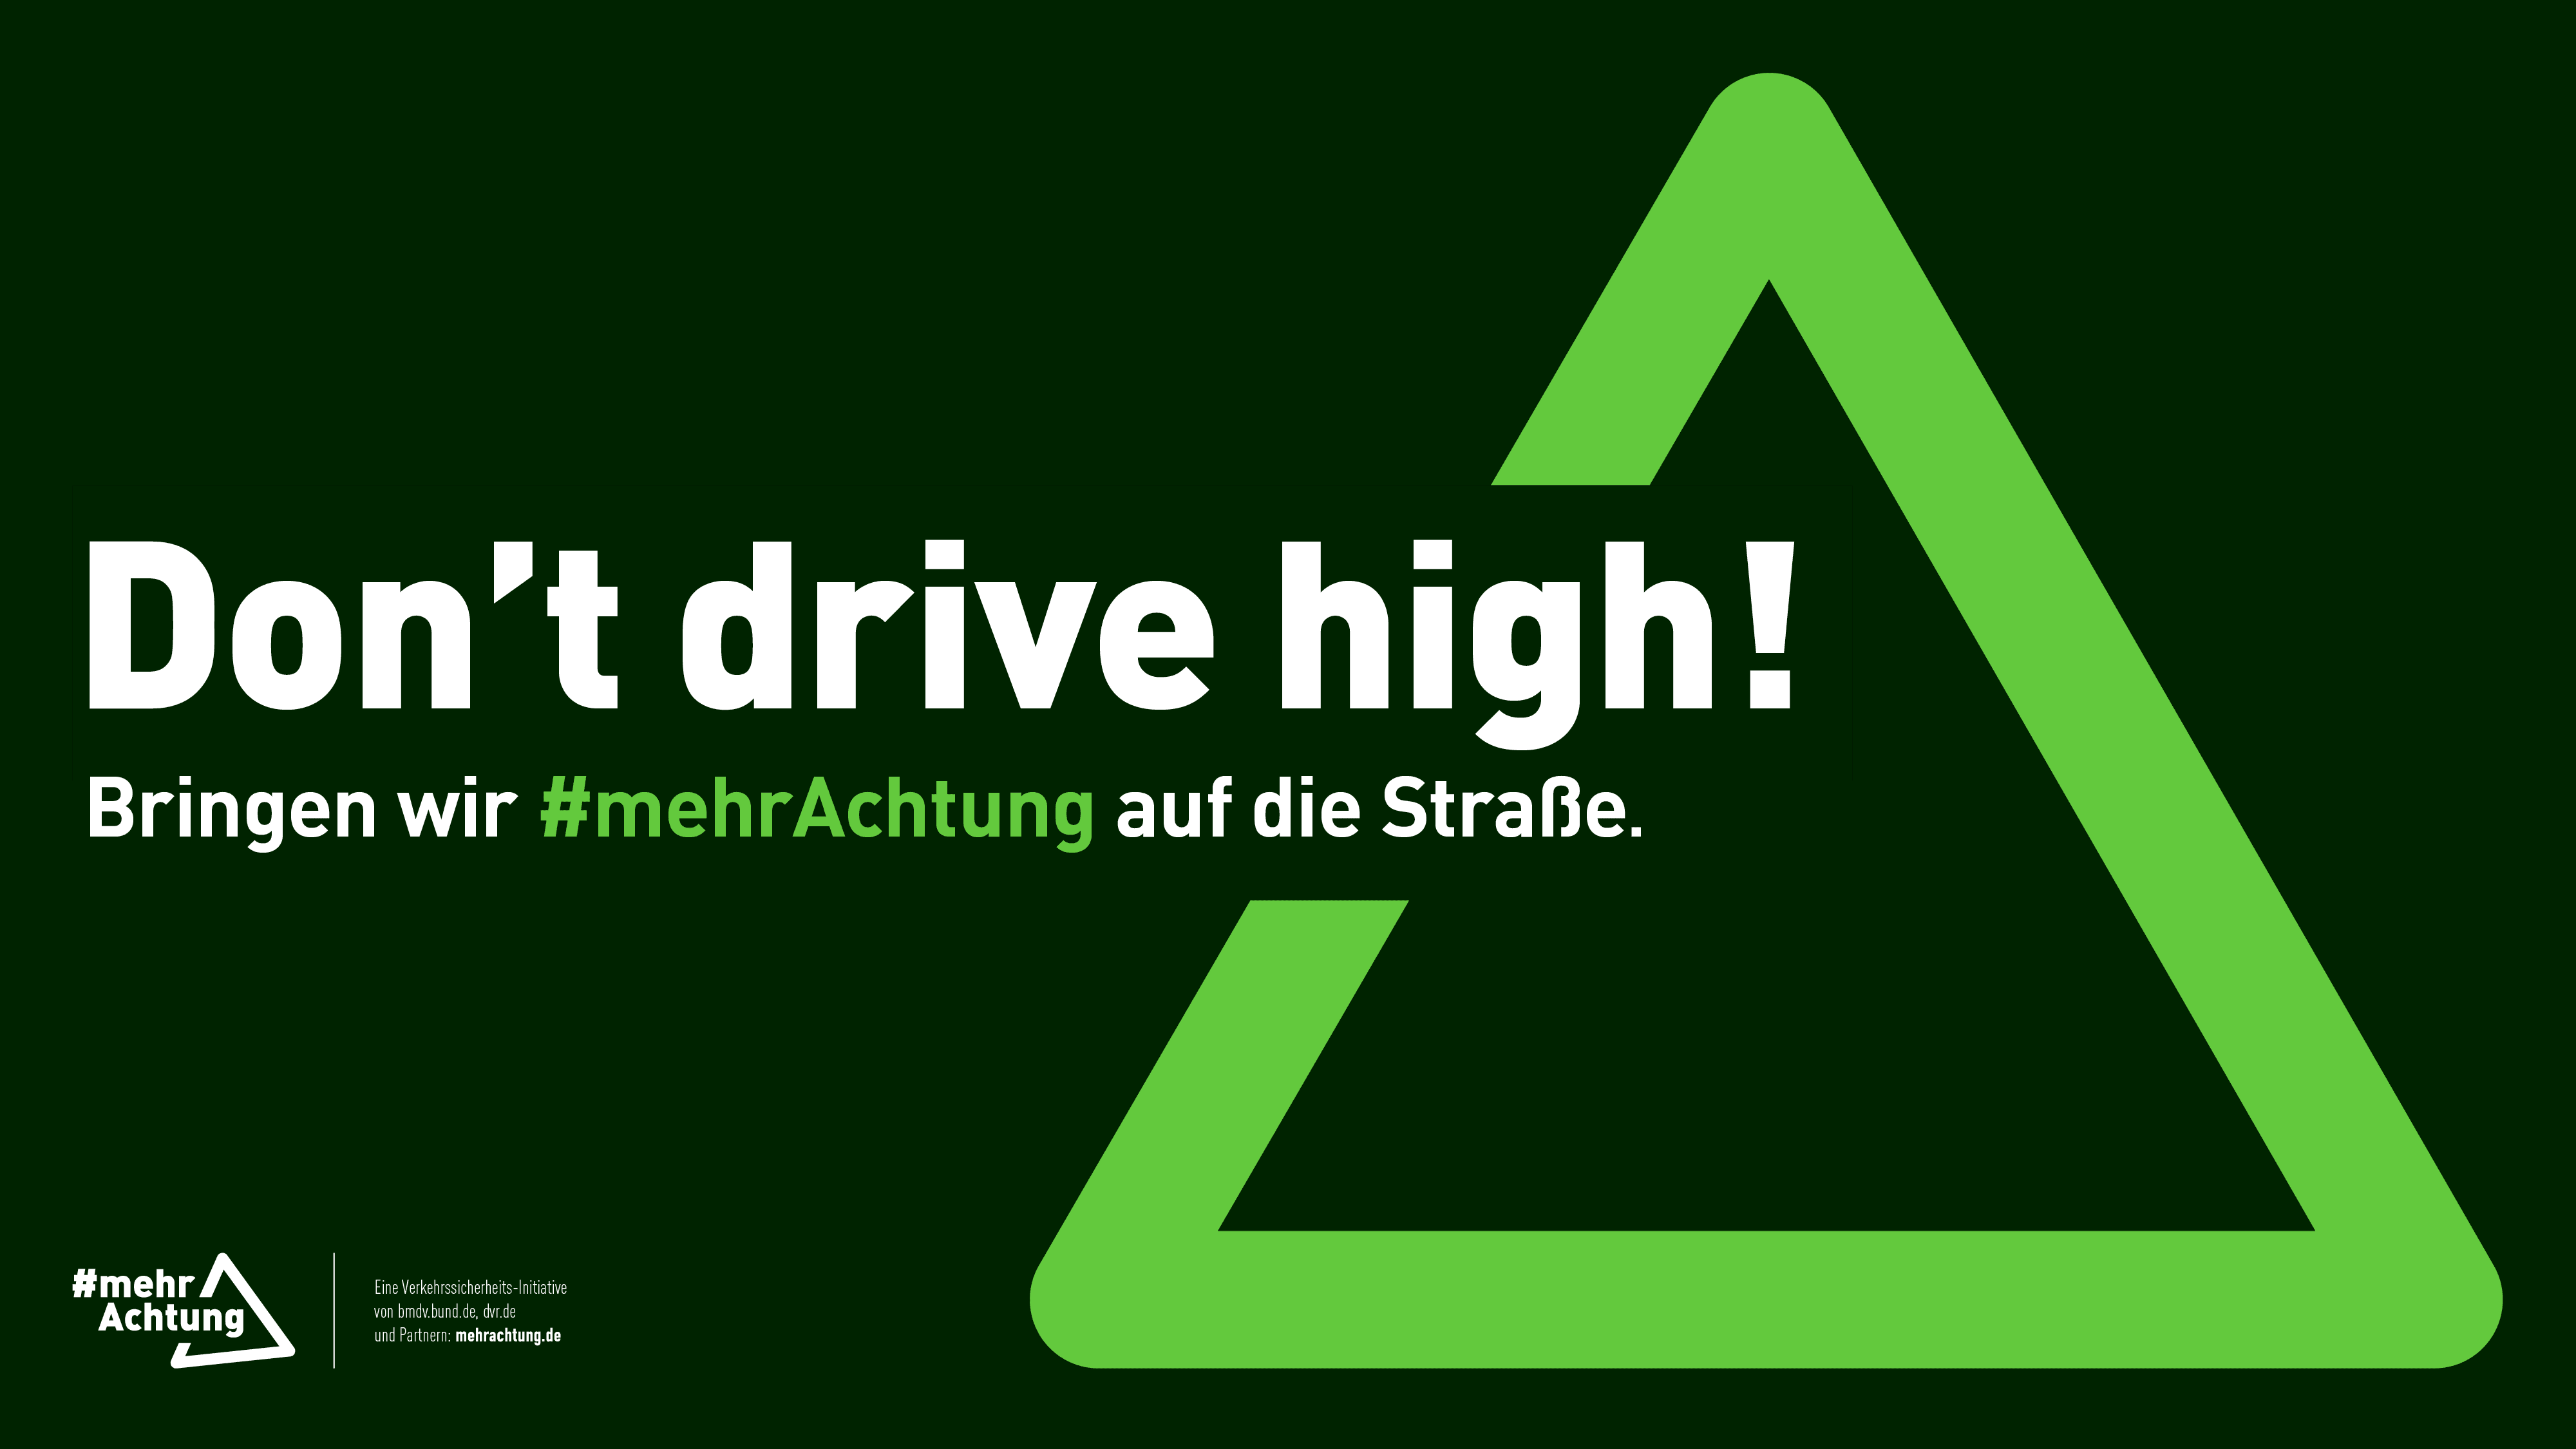 Ein Plakat zeigt die Aufschrift: Don't drive high! Bringen wir mehr Achtung auf die Straße.